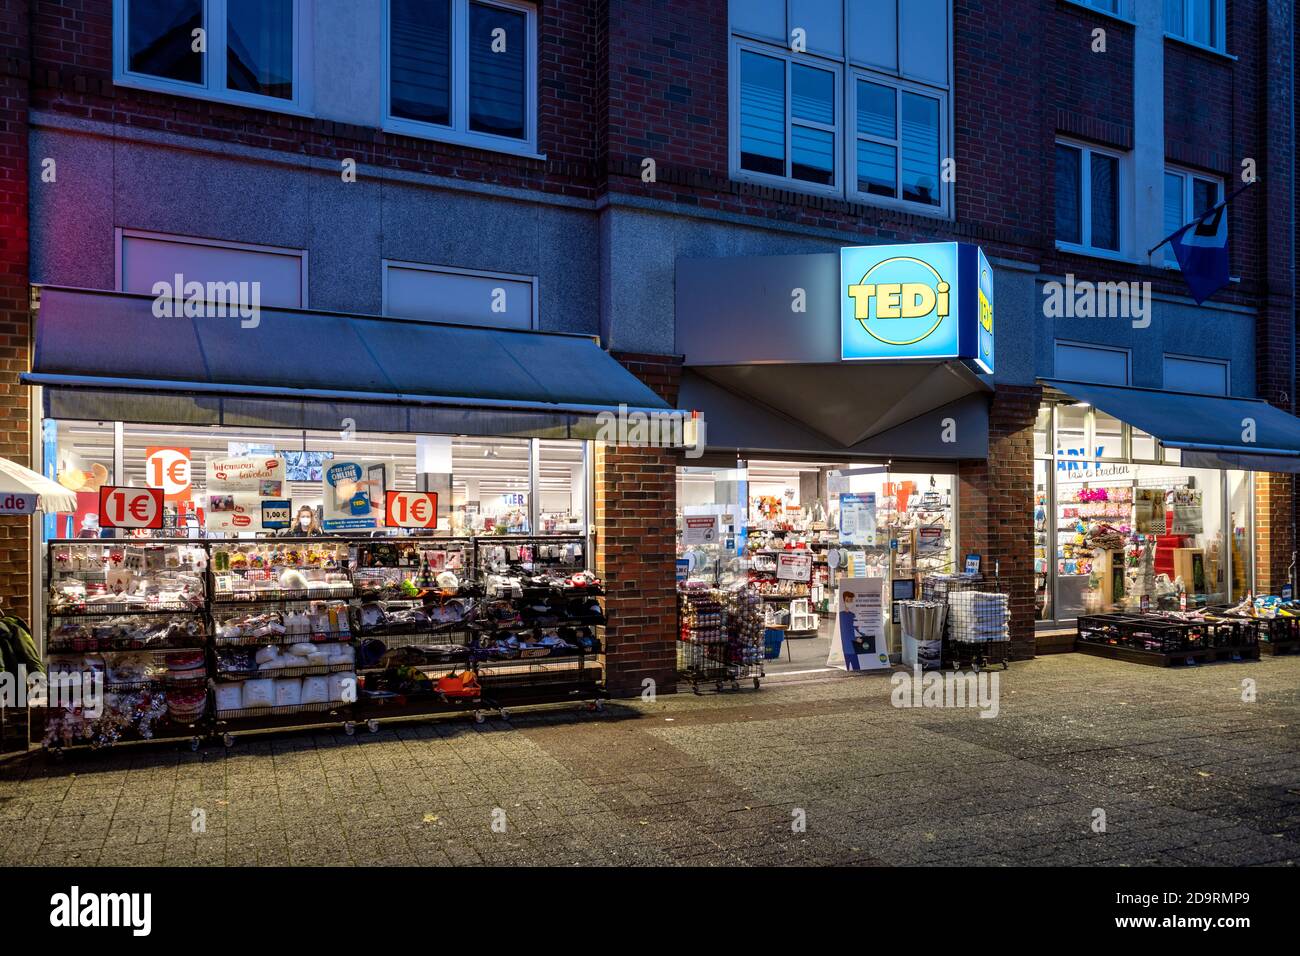 Filiale Tedi a Cuxhaven, Germania. Tedi è un rivenditore tedesco di prodotti non alimentari con circa 2,250 negozi e 20,000 dipendenti in 8 paesi in tutta Europa. Foto Stock